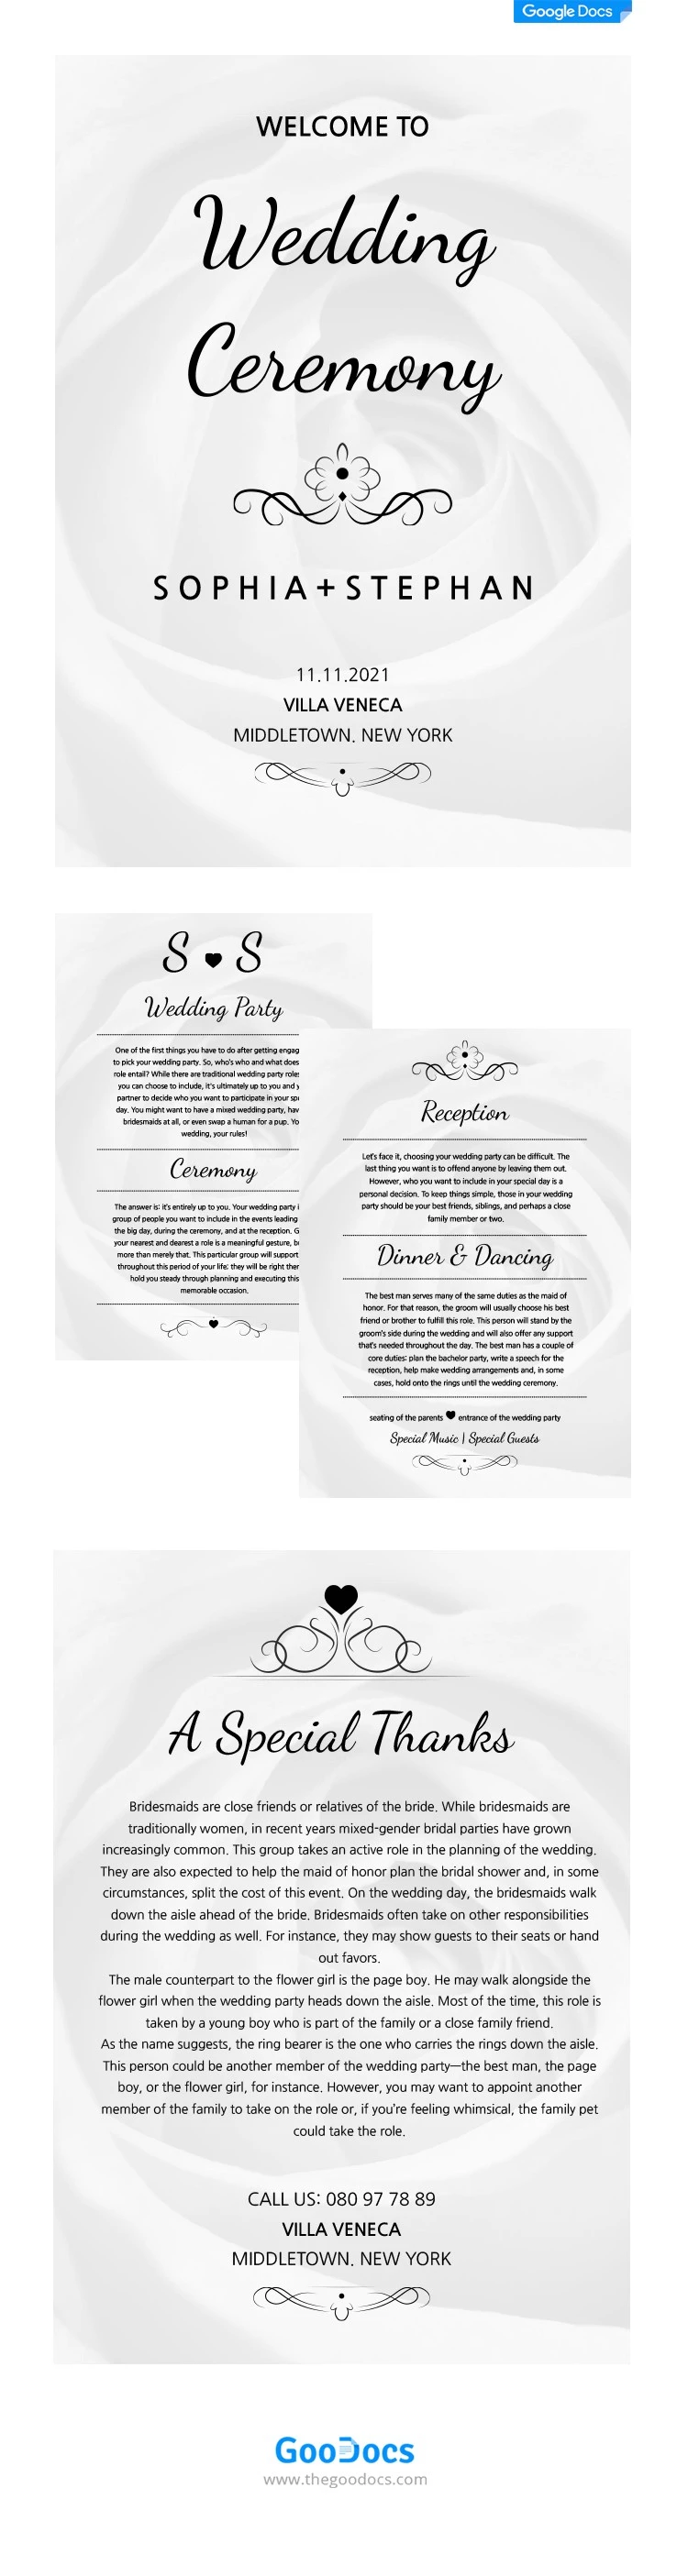 Libro de bodas - free Google Docs Template - 10062084